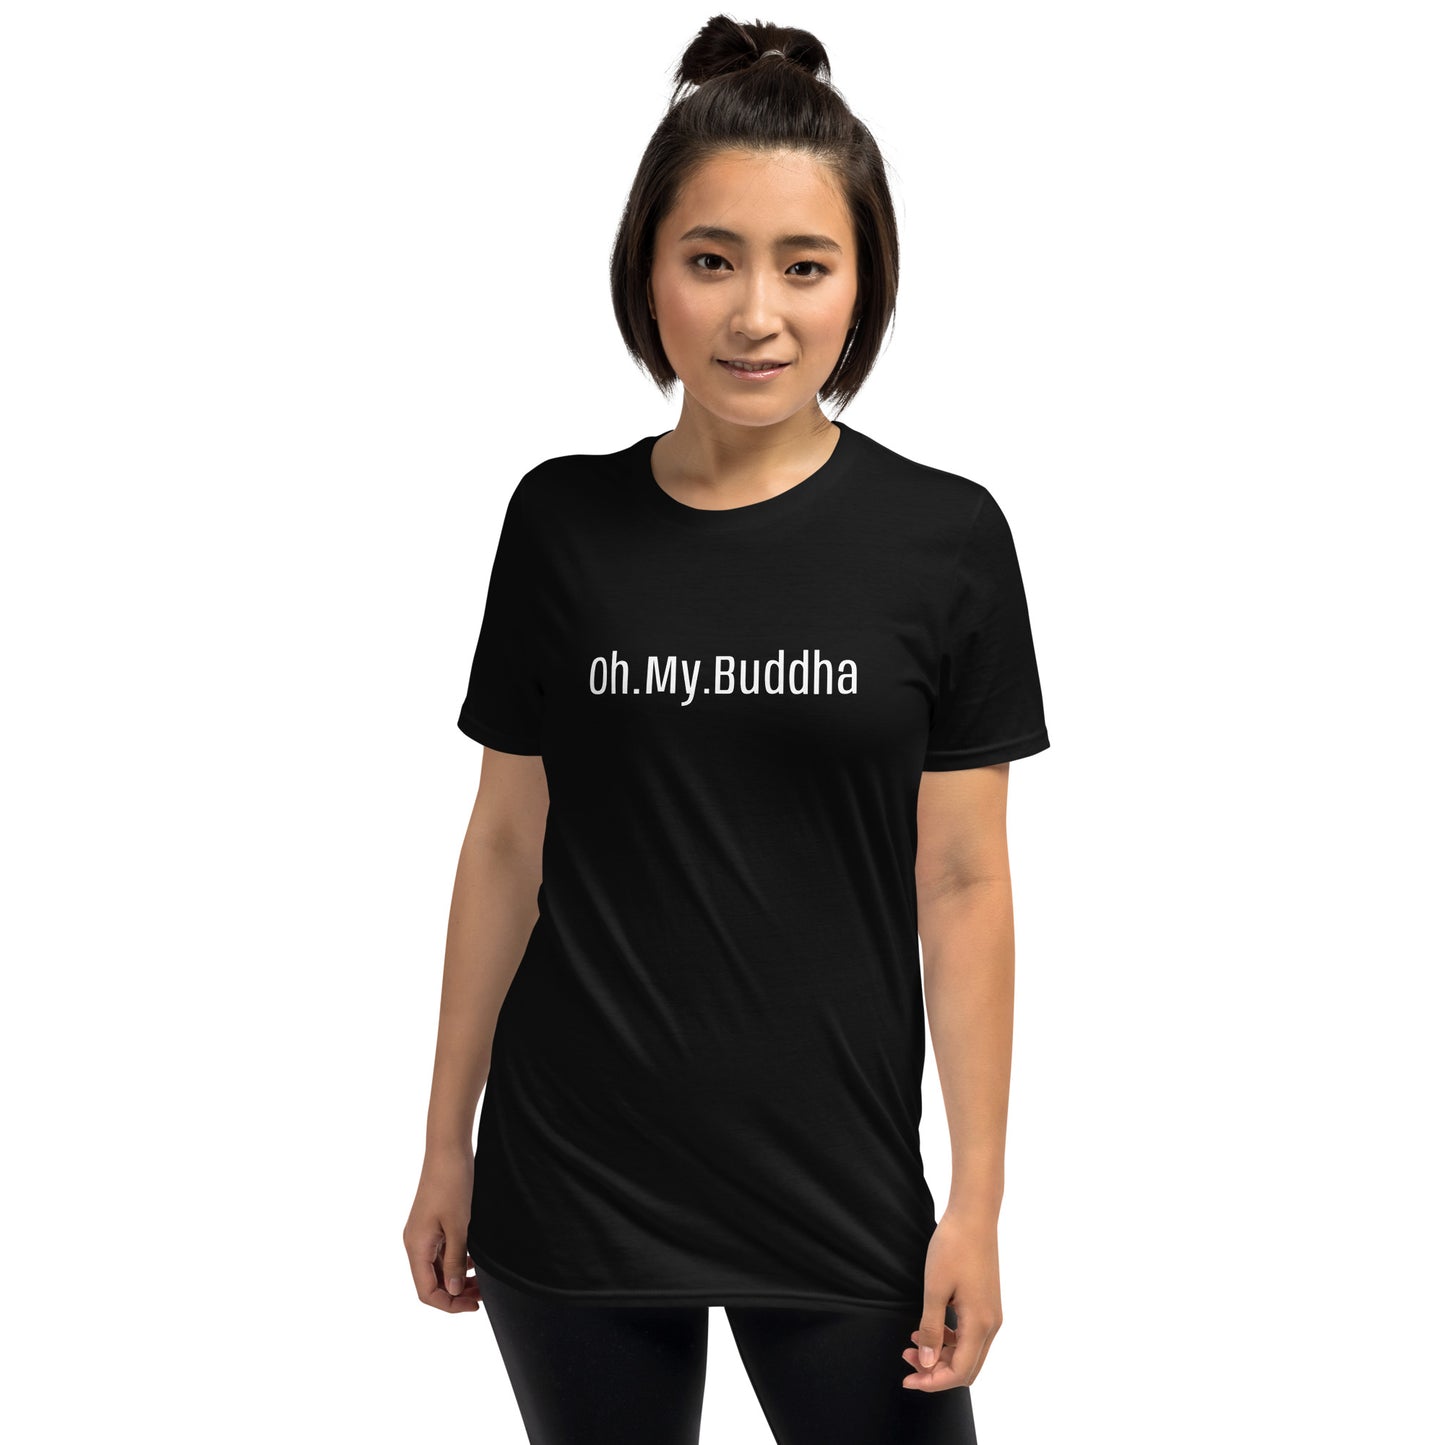 Oh.My.Buddha. - S/S Unisex T-Shirt